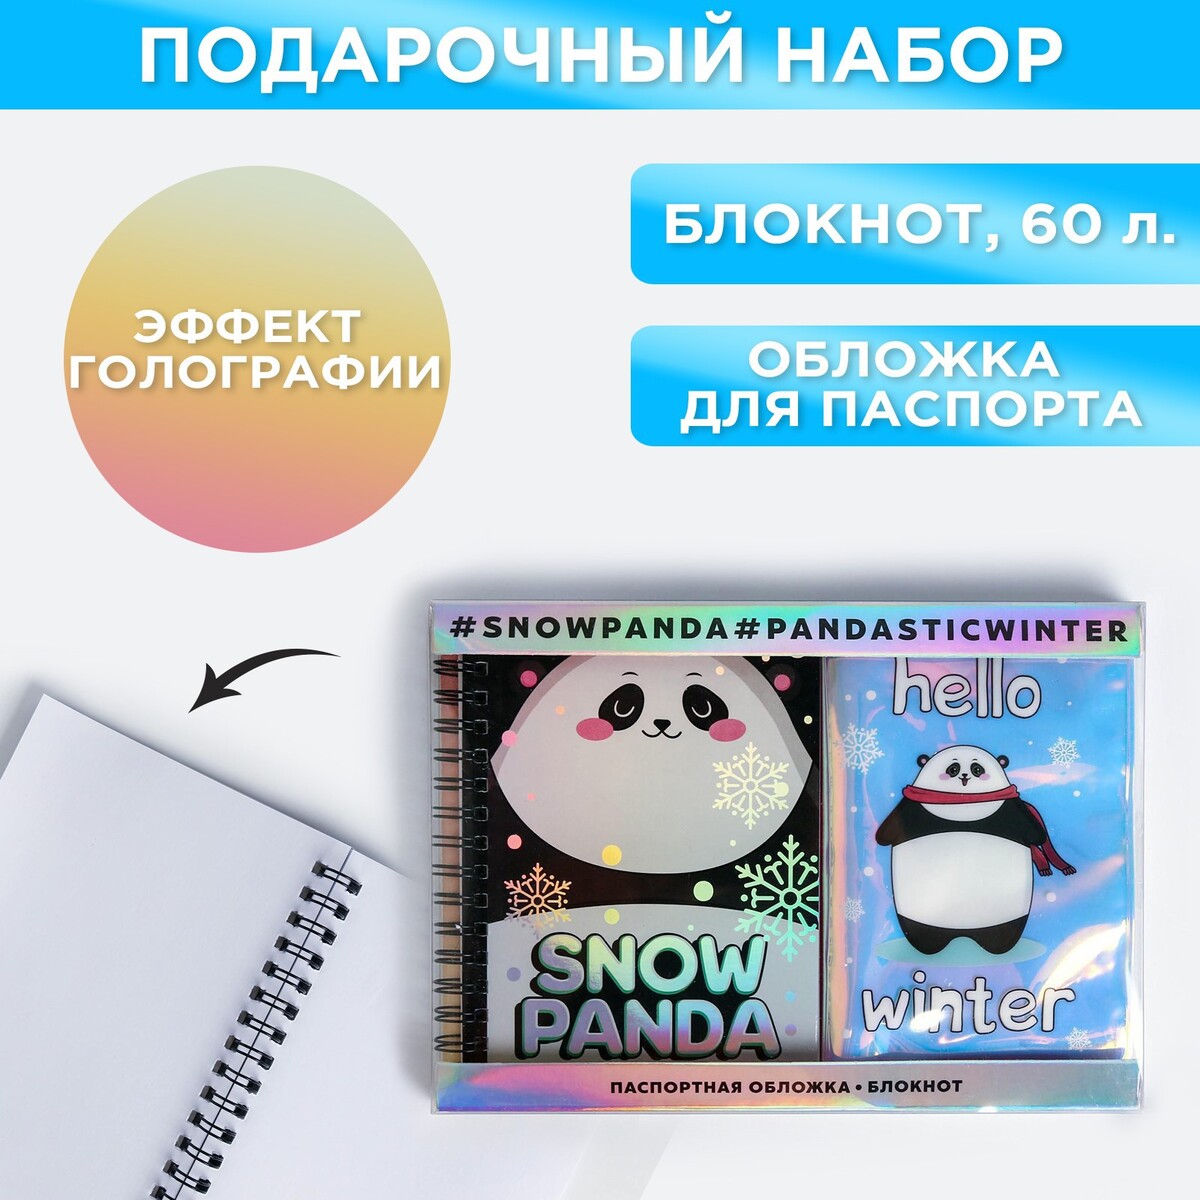 Подарочный набор: голографический блокнот и обложка snow panda набор коньки детские раздвижные snow cat с роликовой платформой защита р 30 33